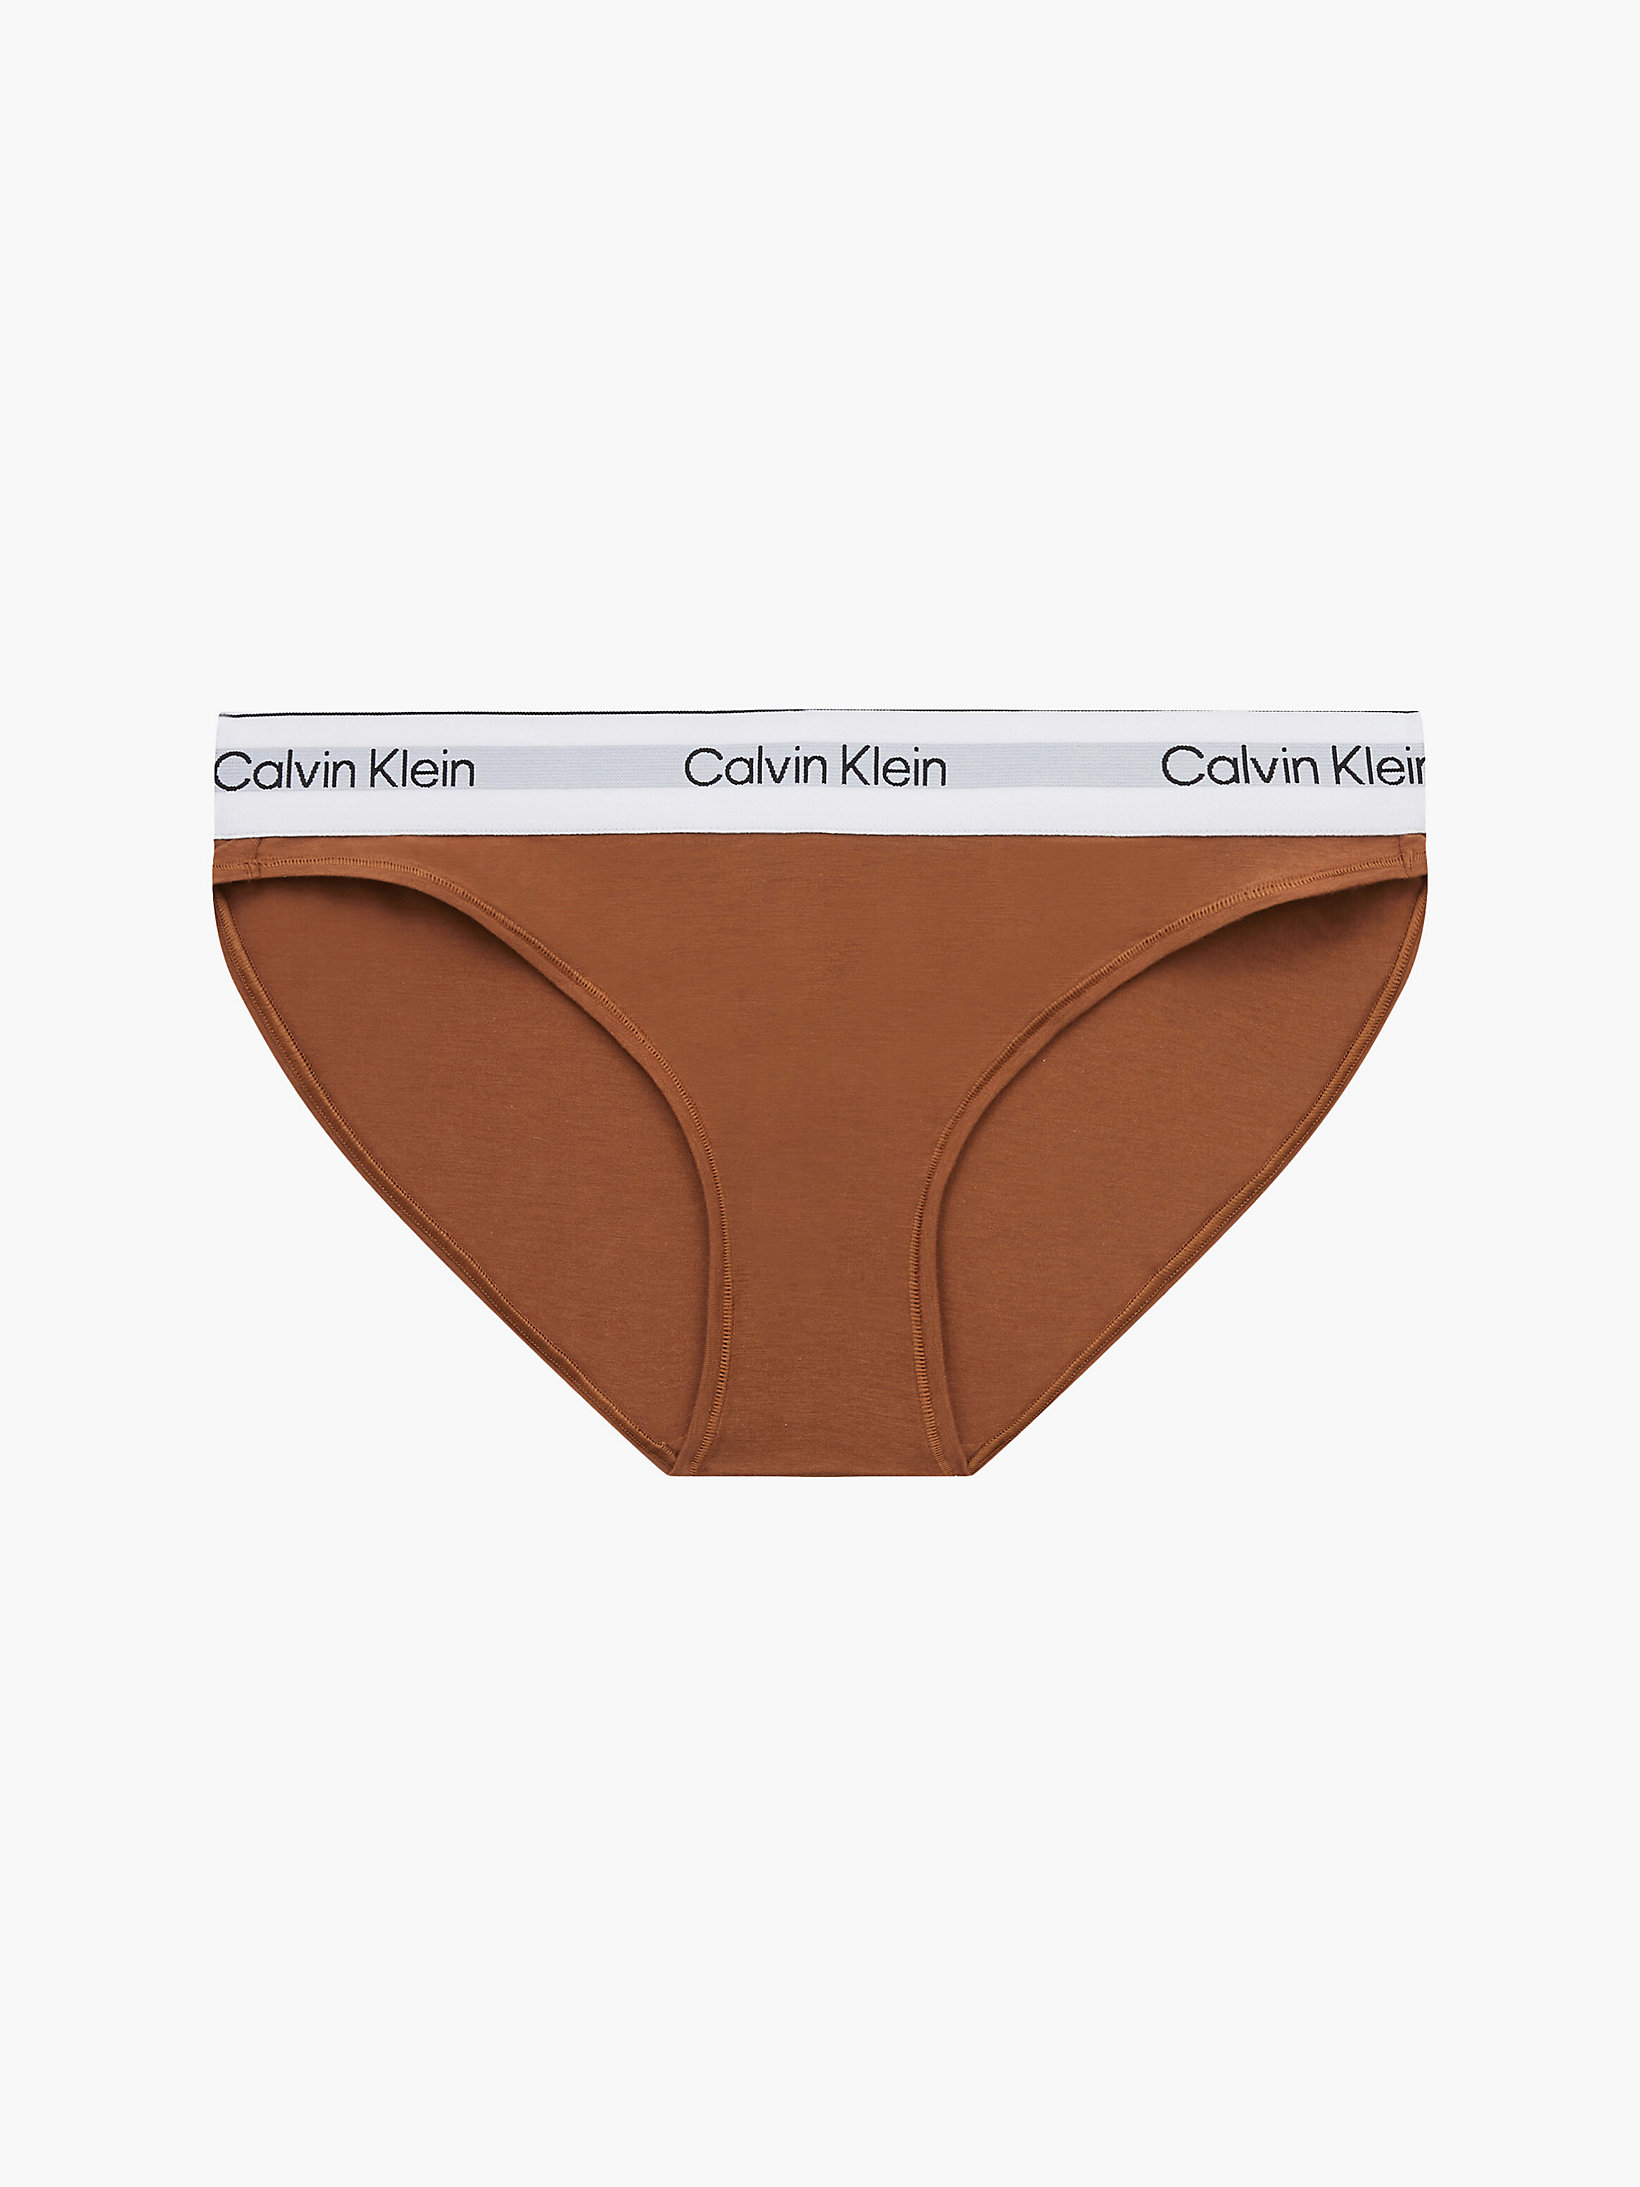 Culotte - Modern Cotton > Warm Bronze > undefined femmes > Calvin Klein